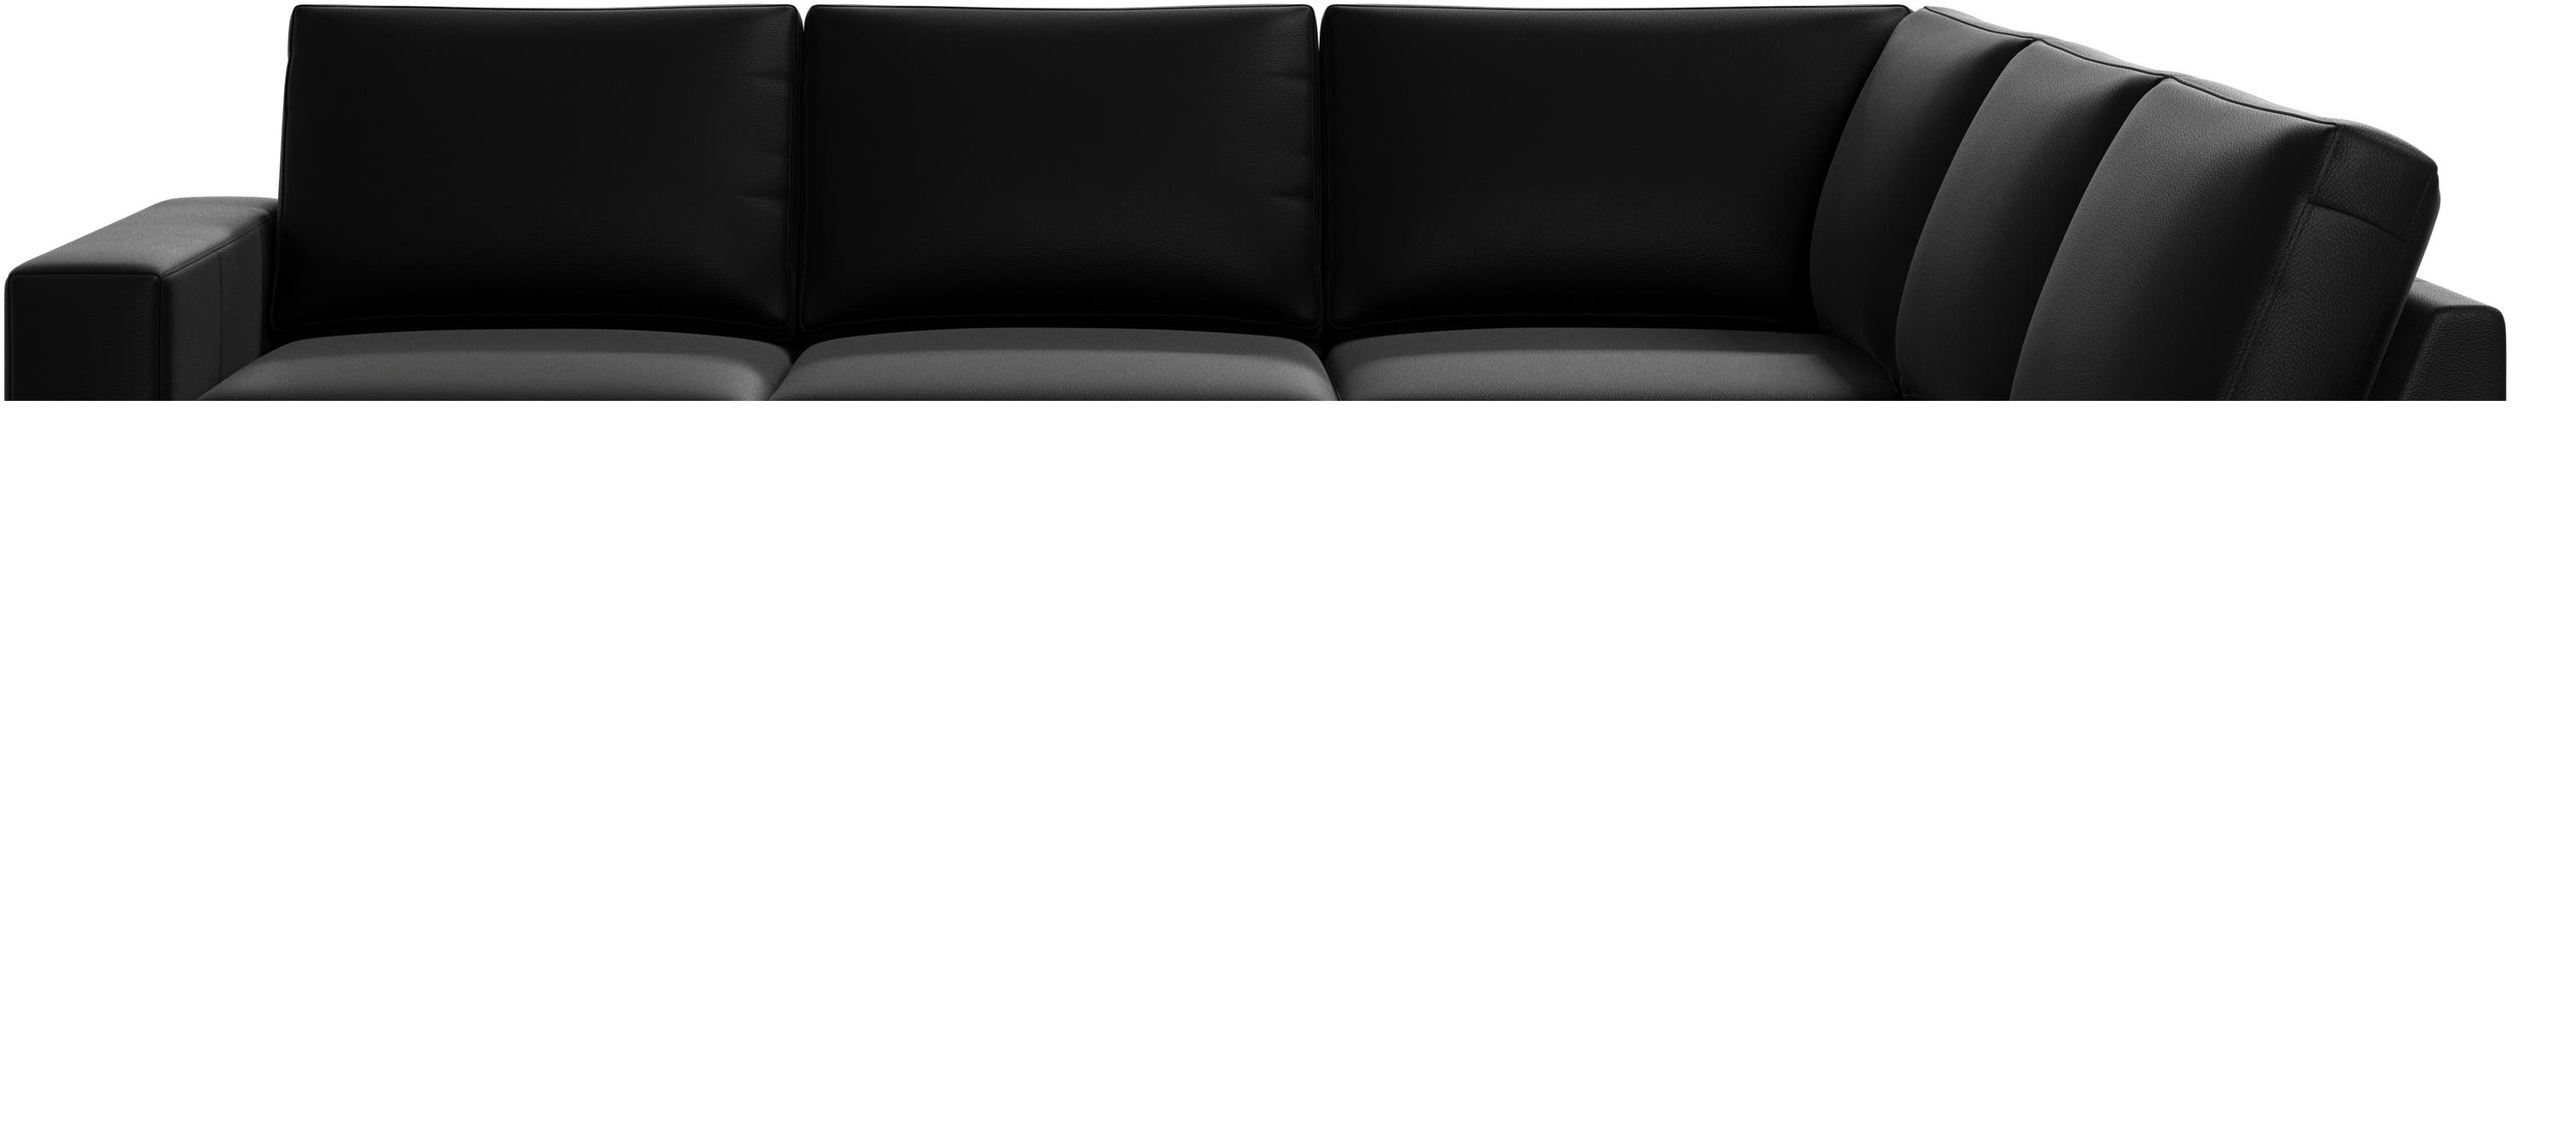 Indivi corner sofa